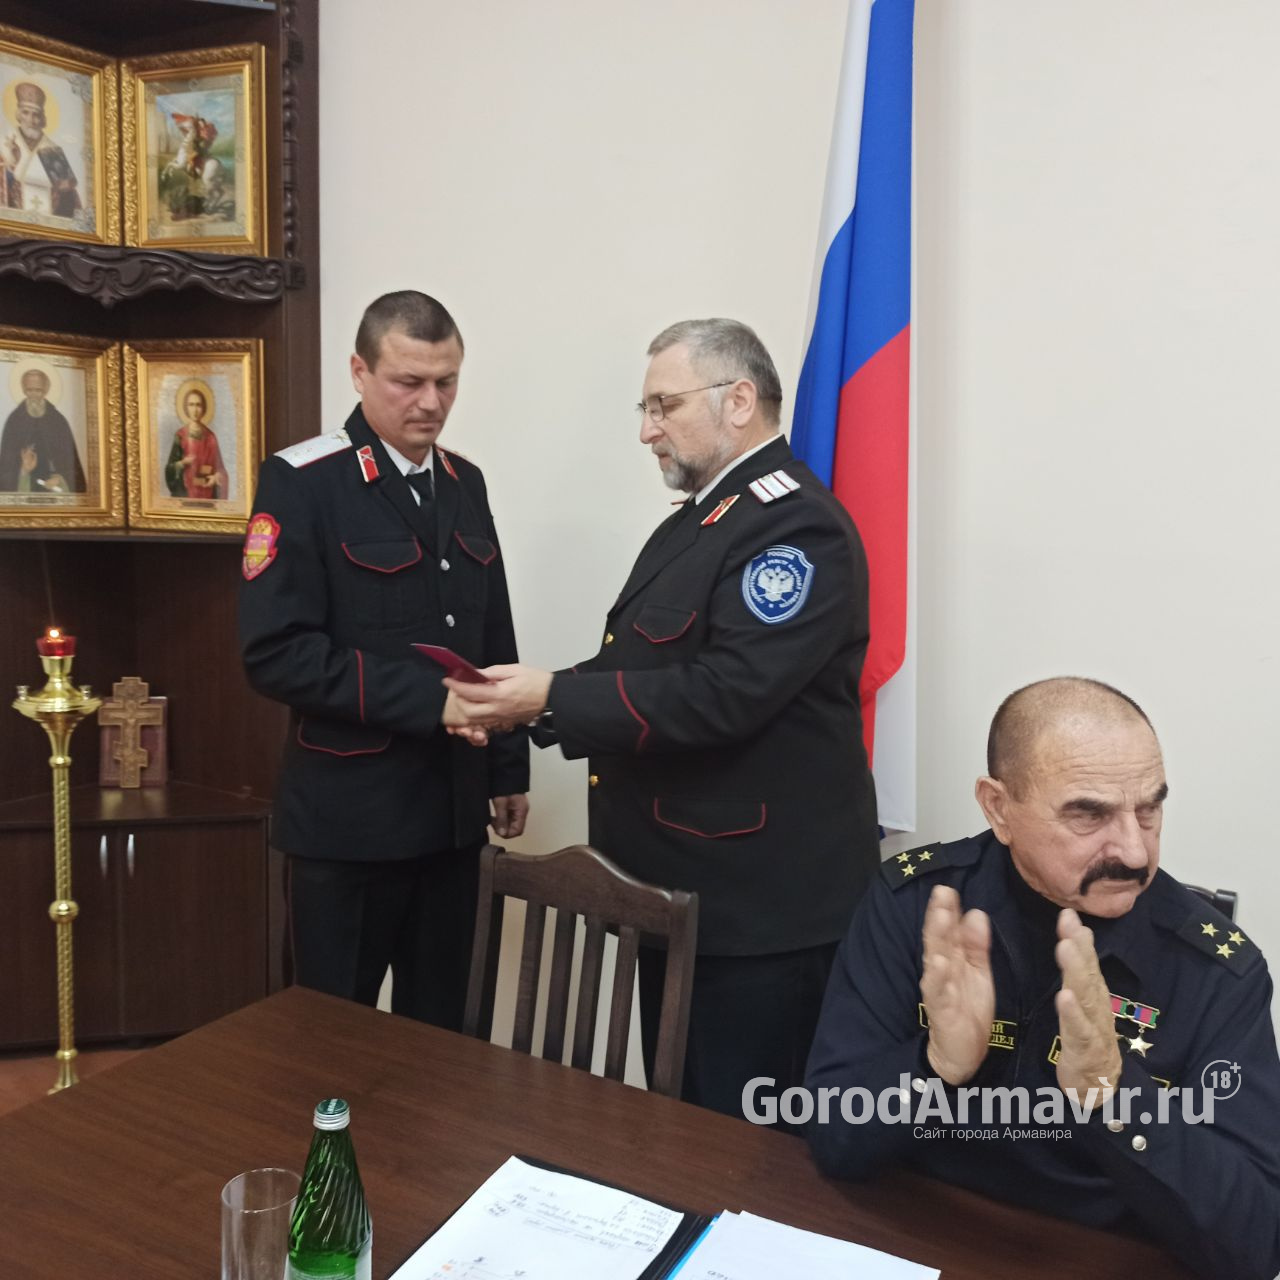 Казака из Армавира Дениса Куренина наградили медалью «За участие в спецоперации по денацификации и демилитаризации Украины» 